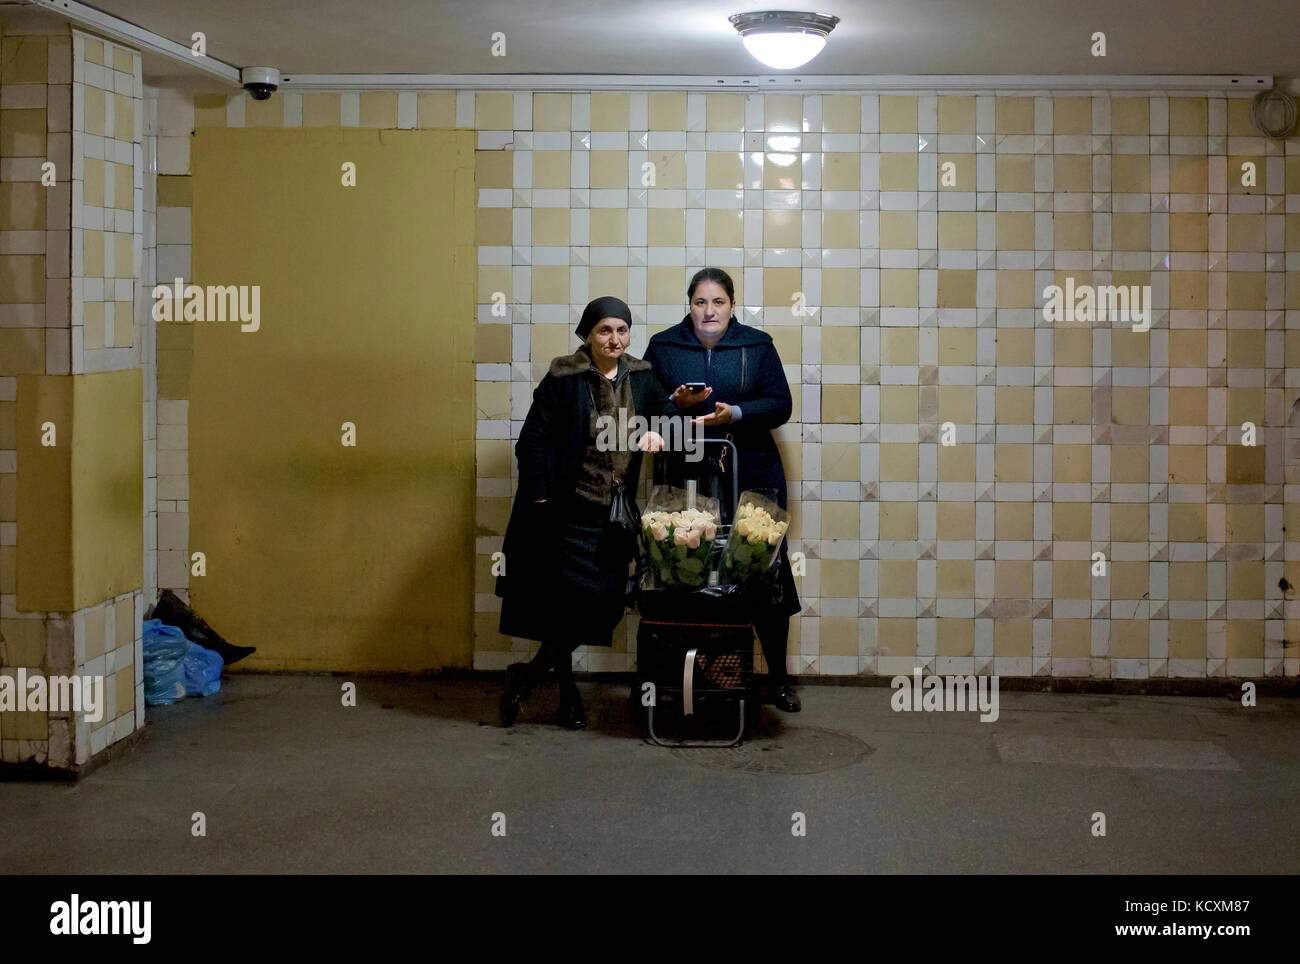 A la stazione kievskaya, les vendeurs à la sauvette sont vite repérés, il est formellement interdit de vendre des Fleurs à l'interieur et à l'exterieur Foto Stock